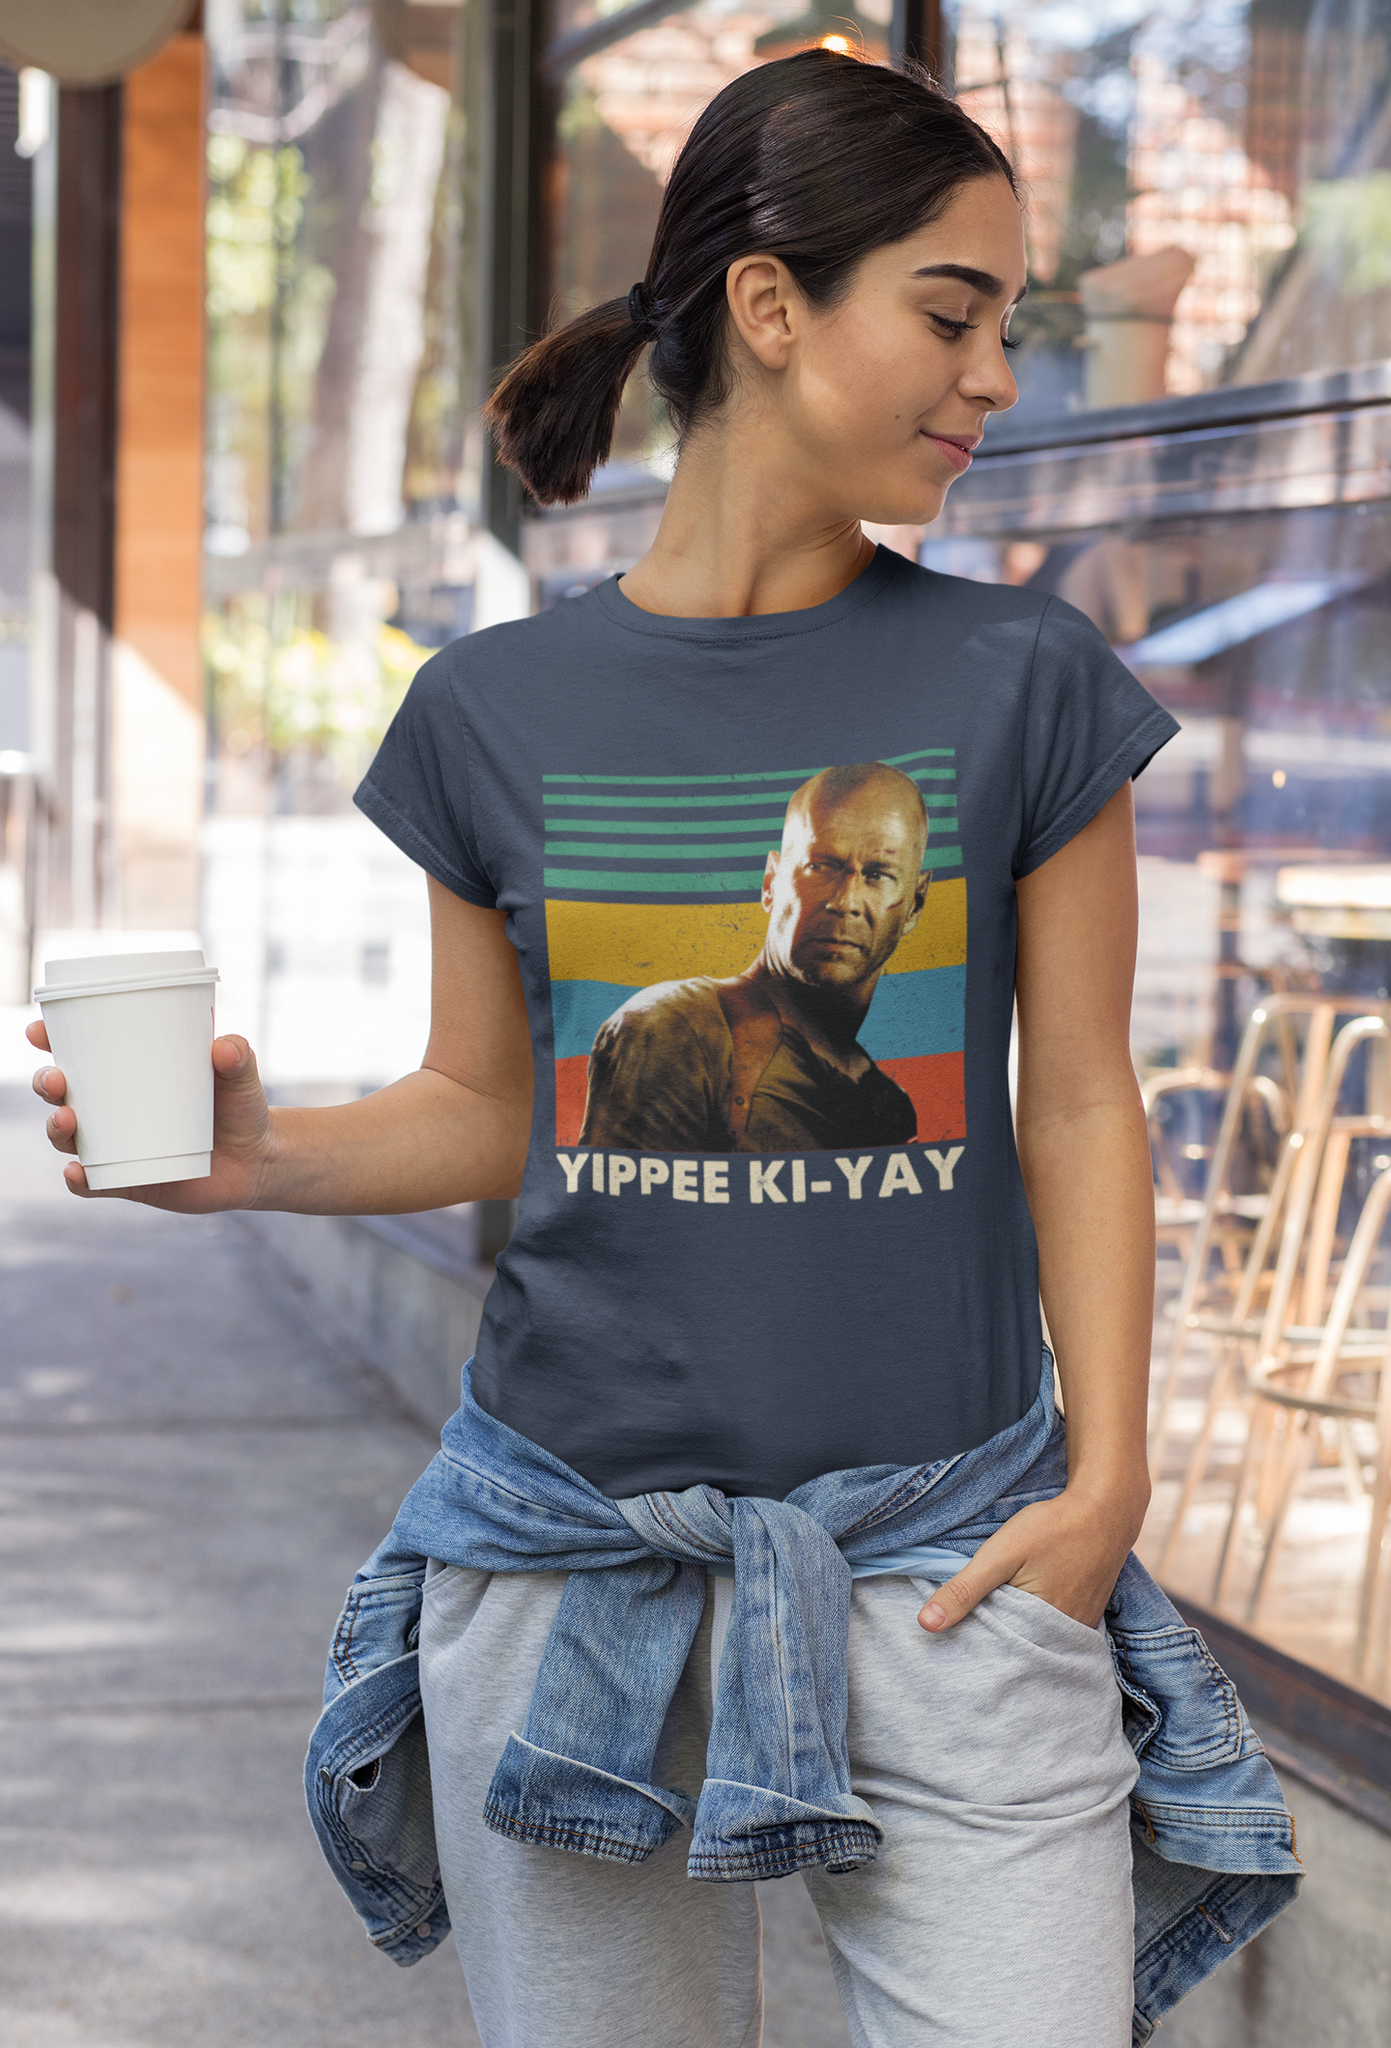 Die Hard Movie T Shirt, John McClane T Shirt, Yippee Ki Yay Tshirt